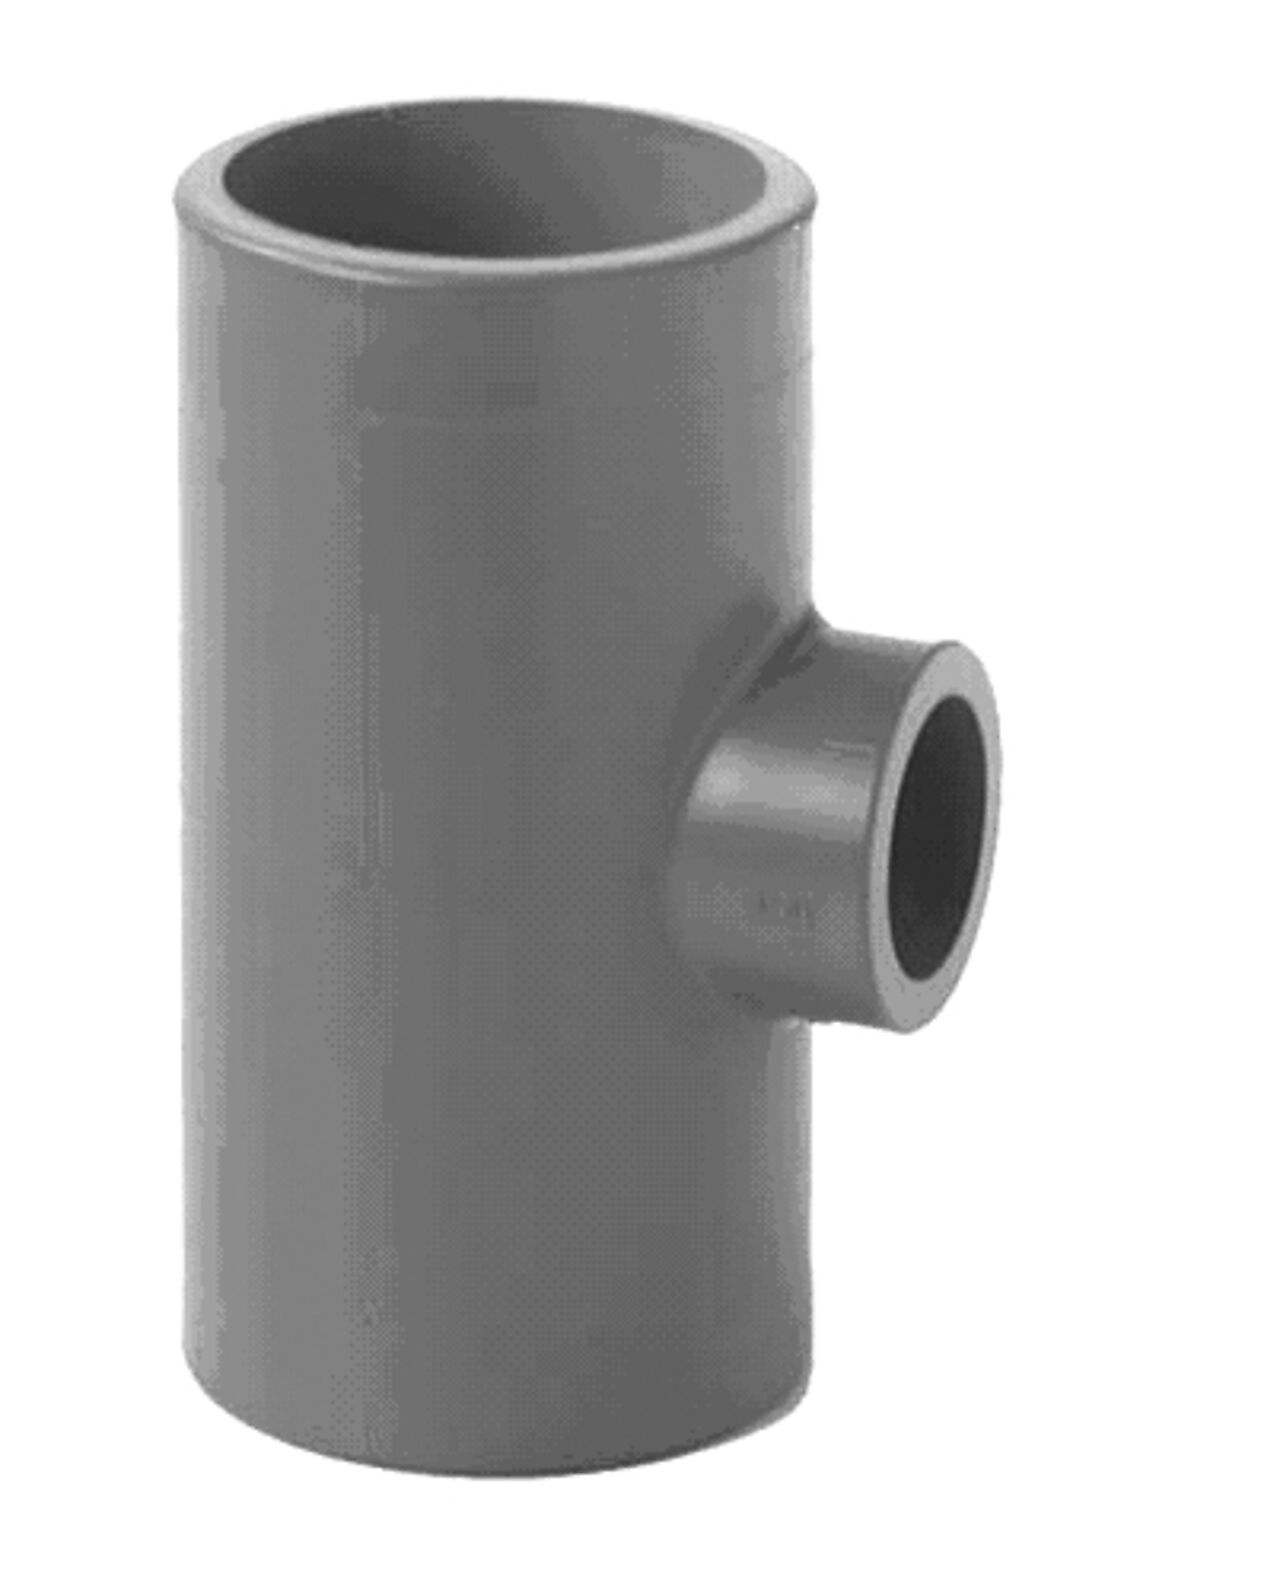 Georg Fischer T-rør 90° redusert PVC-U 50-32 mm, metrisk, PN16, leverandørnr. 721 200 164 1